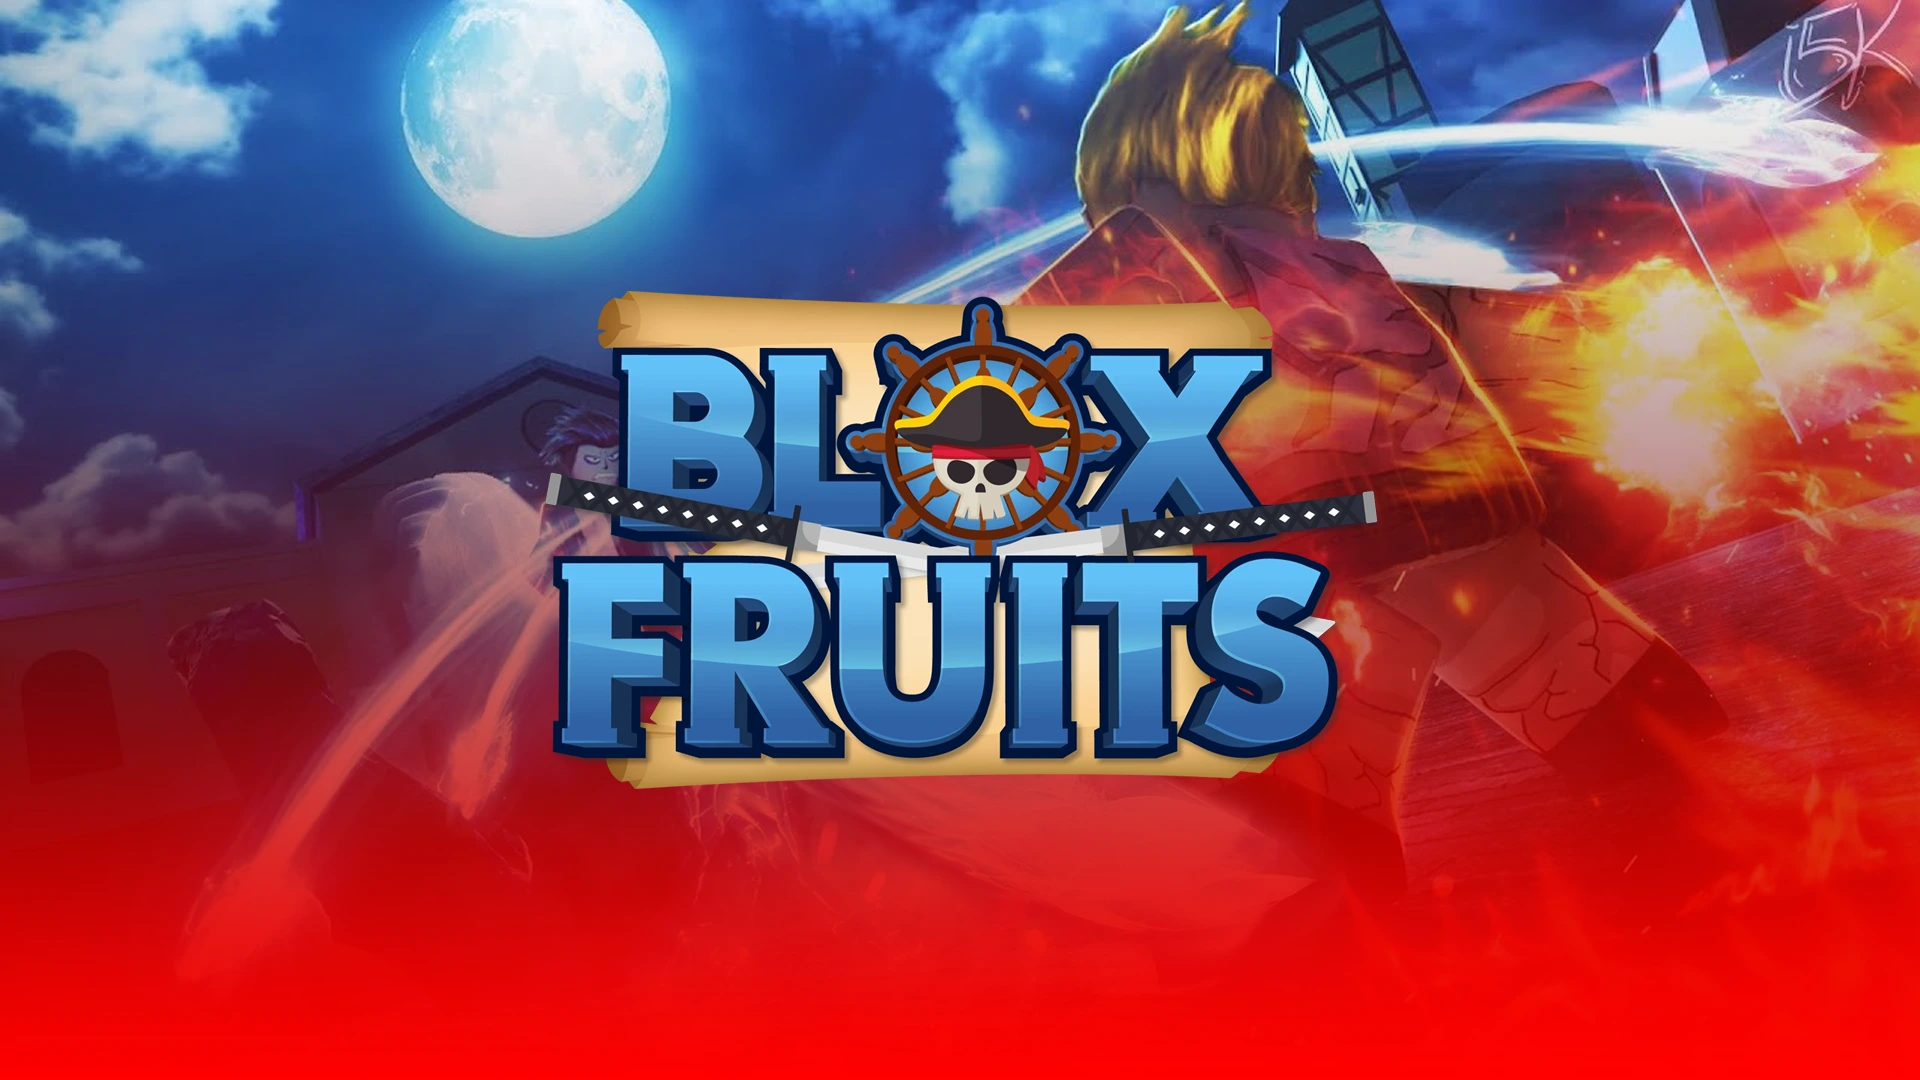 Awakened Rumble vs Awakened Light, Blox Fruits Fights